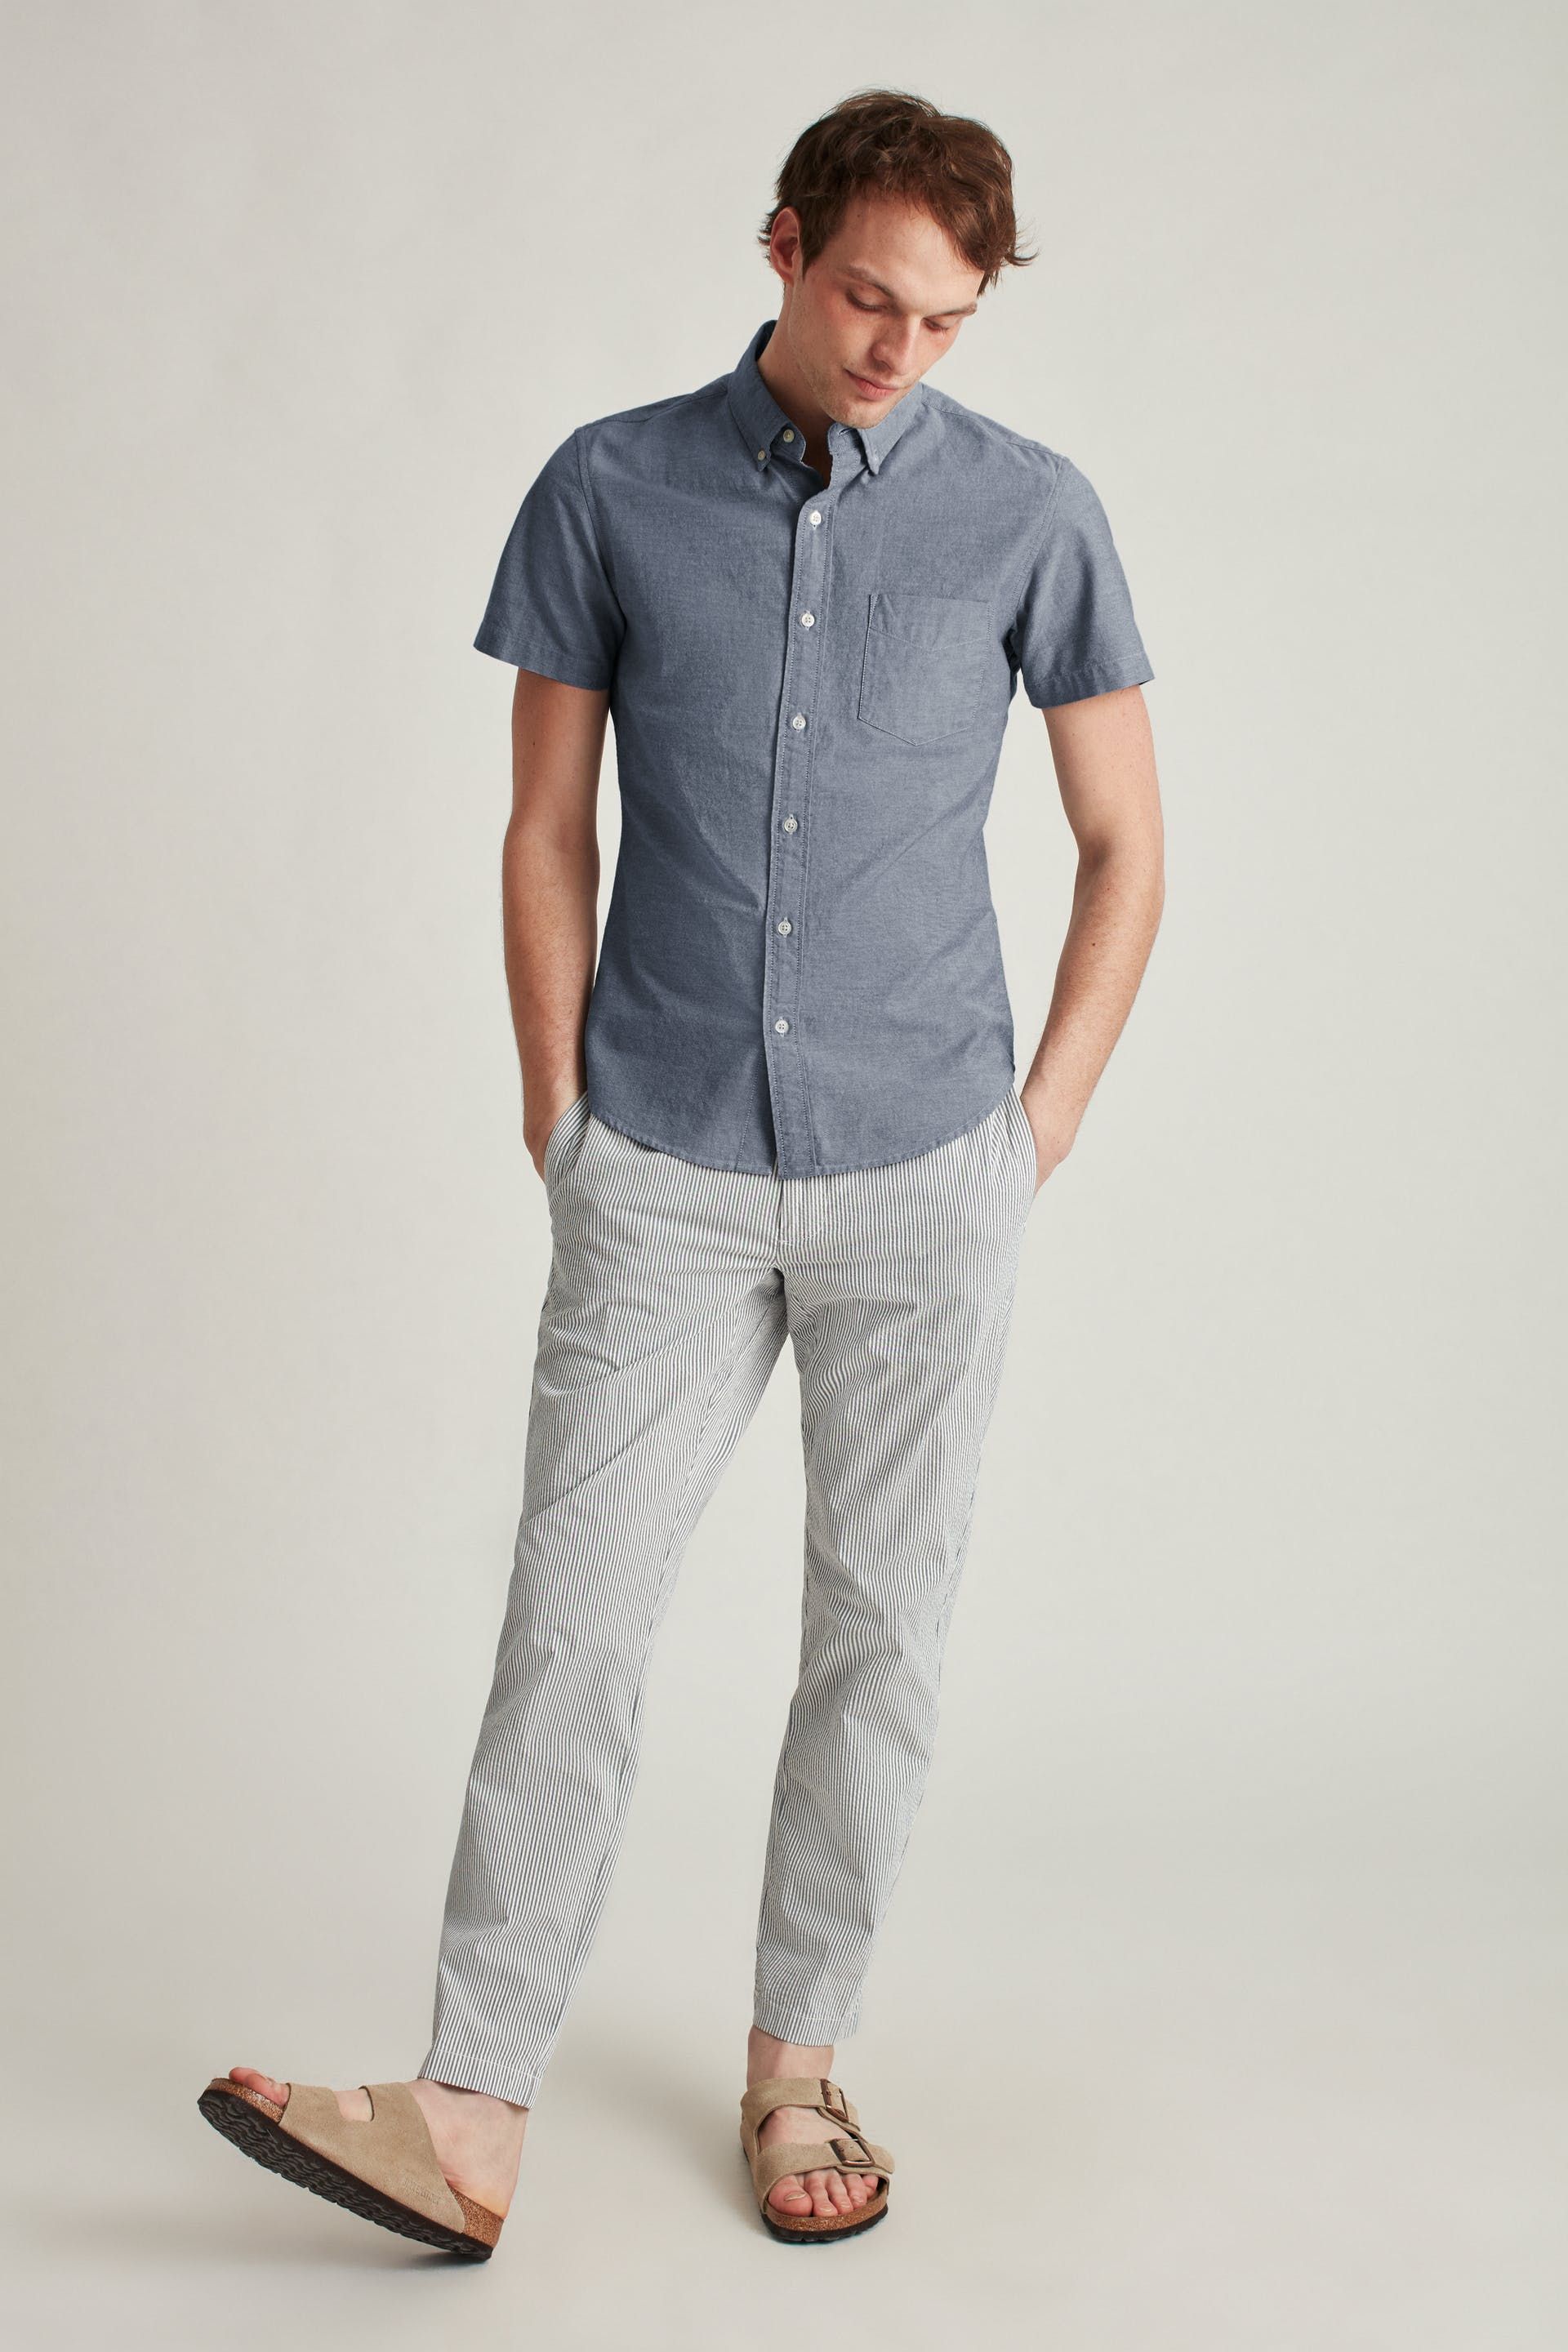 Men's Luxury Slim Dress Shirt Summer Short Sleeved Formal Shirt Button Down Tops